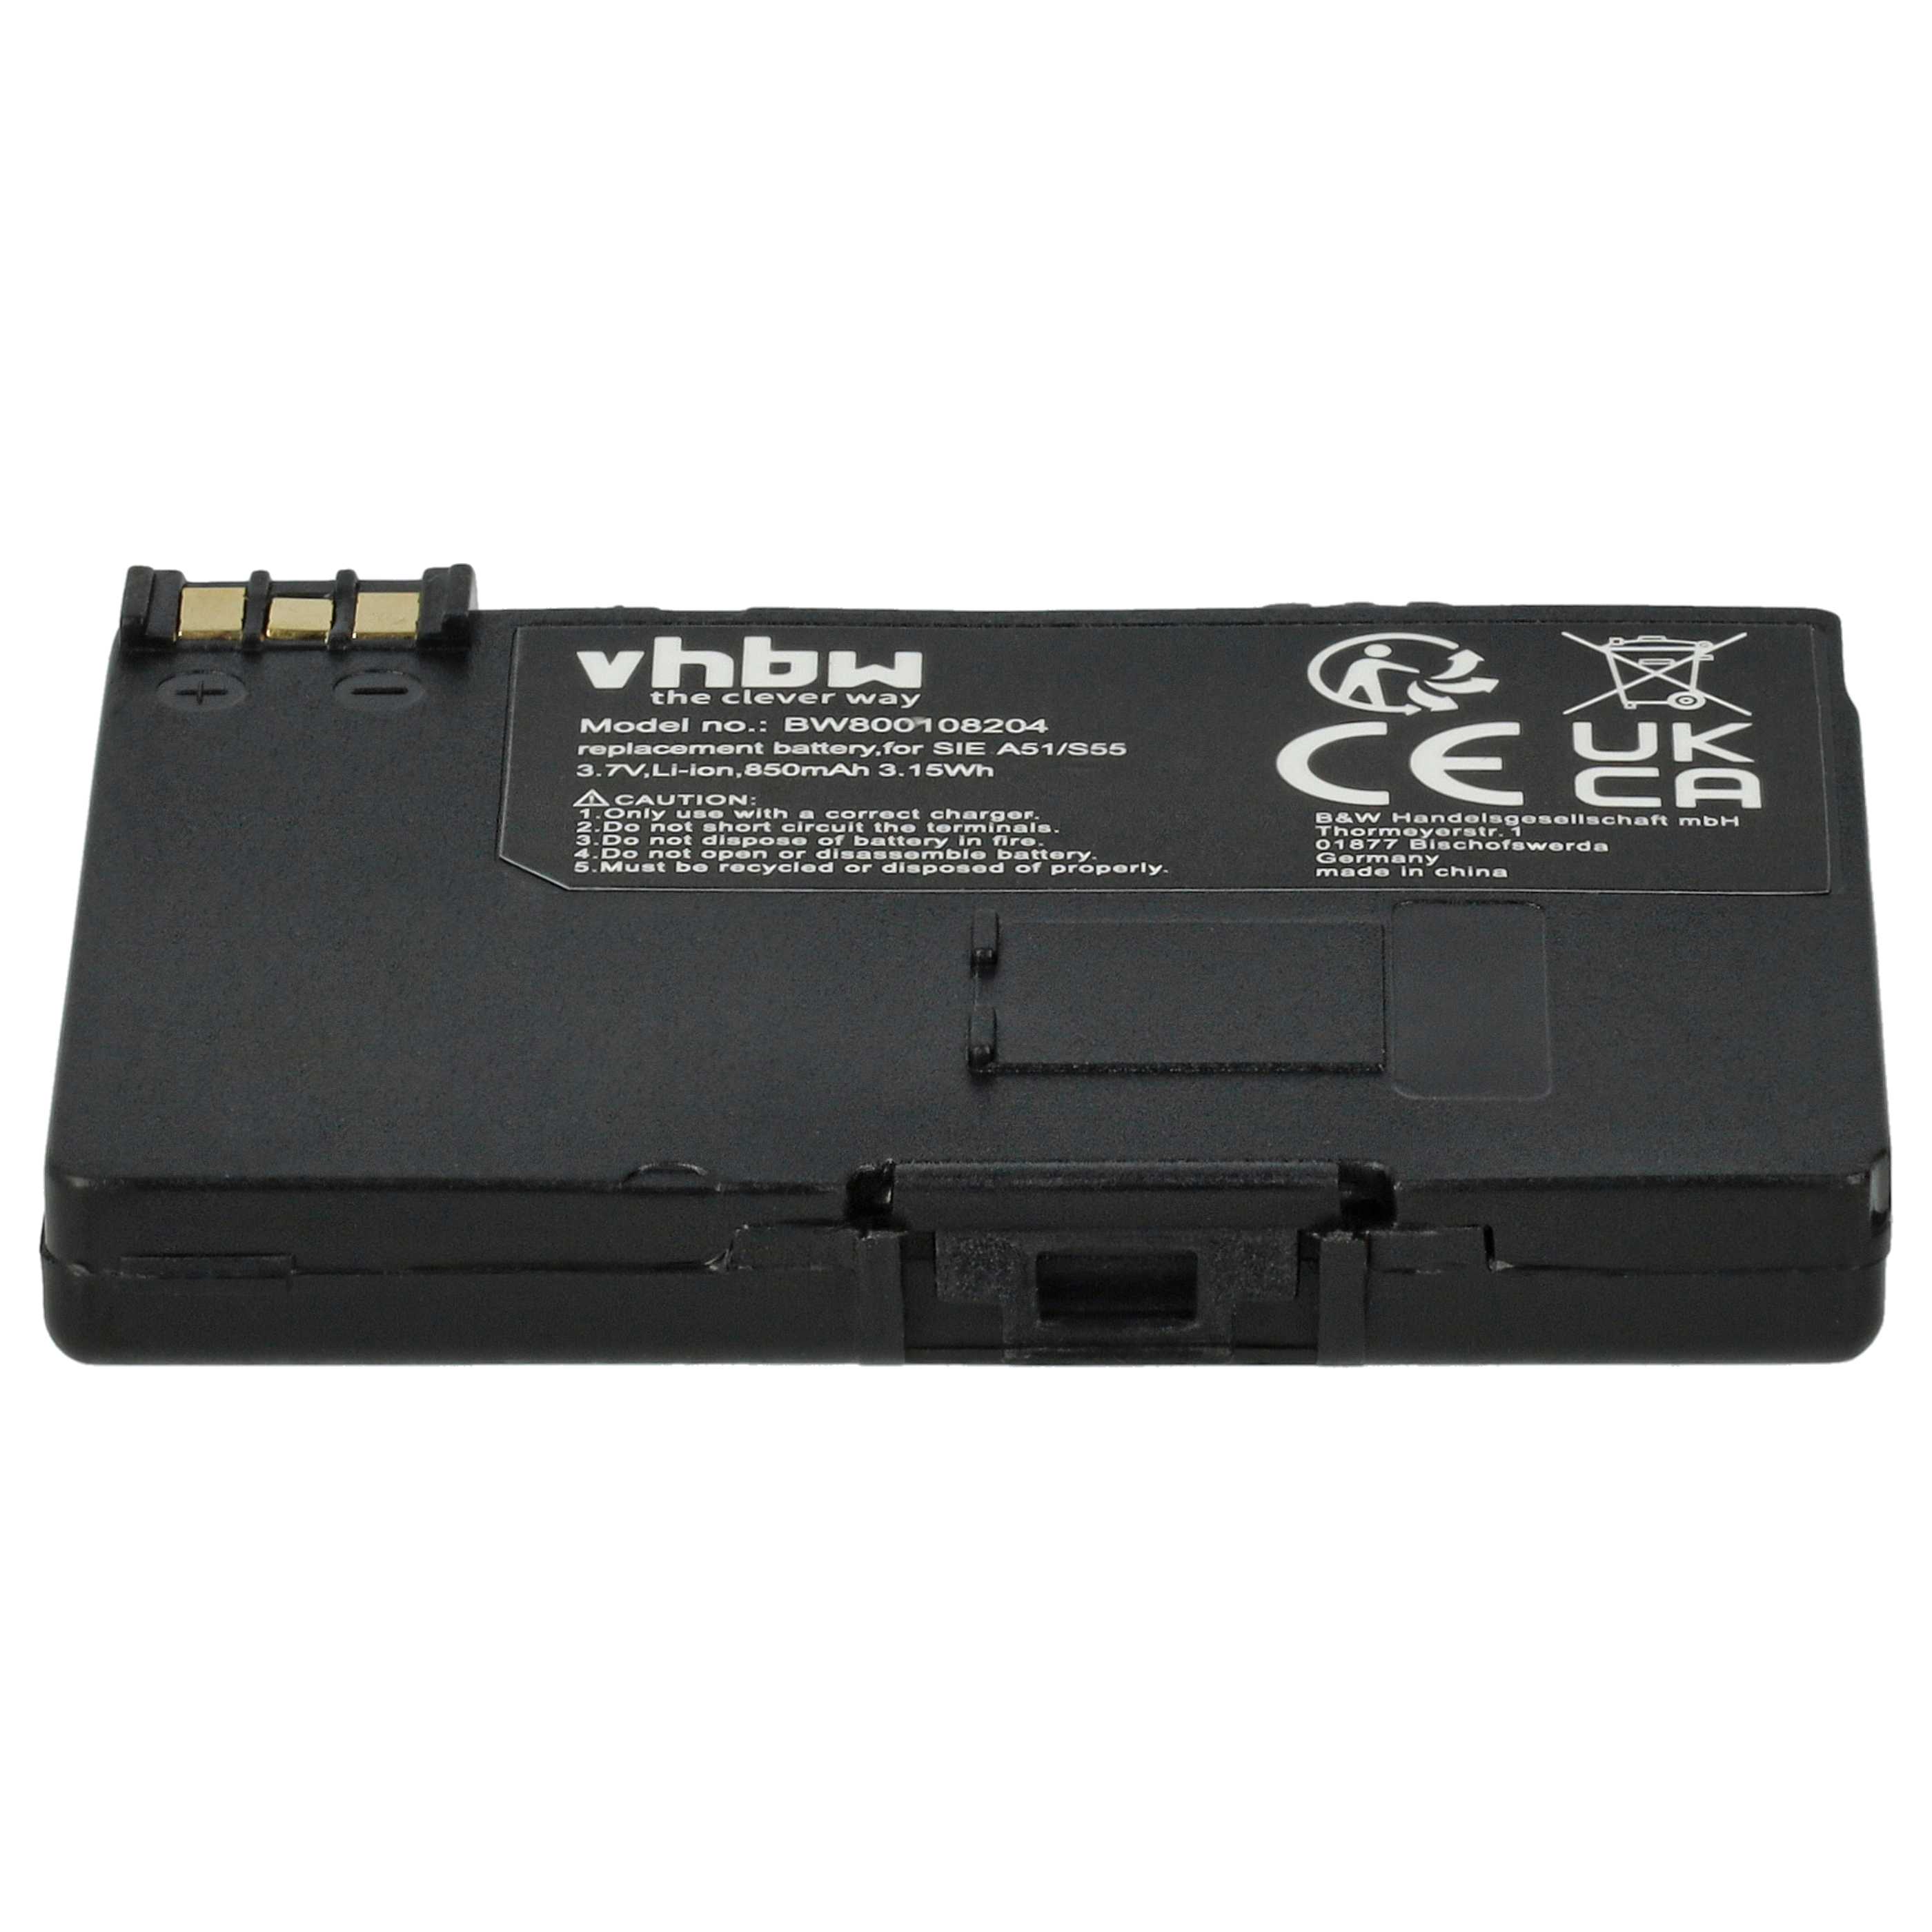 Batería reemplaza EBA-510, L36145-K1310-X401, BASIC56 para teléfono fijo Swisscom - 850 mAh 3,7 V Li-Ion